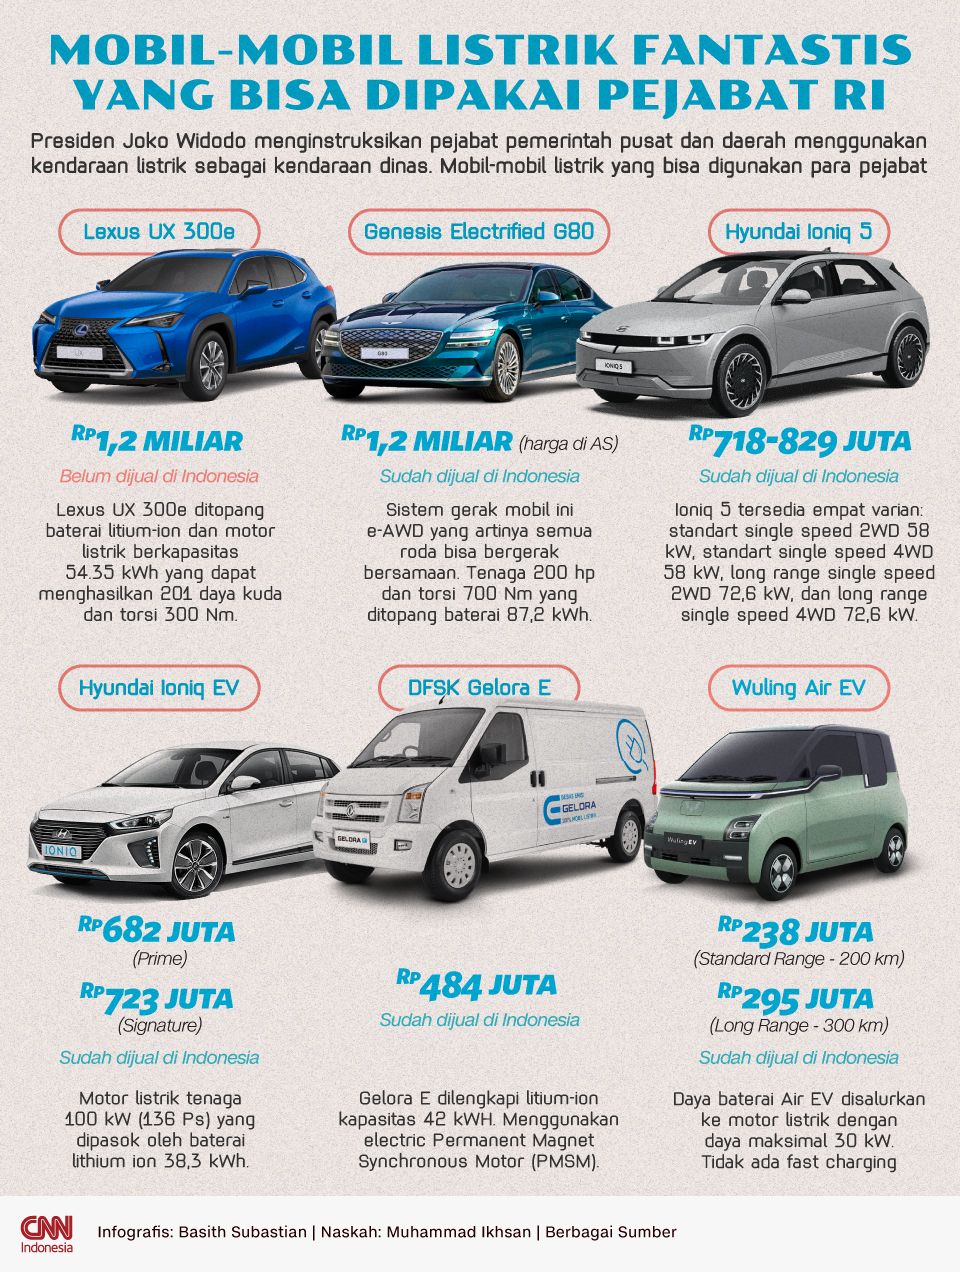 Infografis - Mobil-mobil Listrik Fantastis yang Bisa Dipakai Pejabat RI